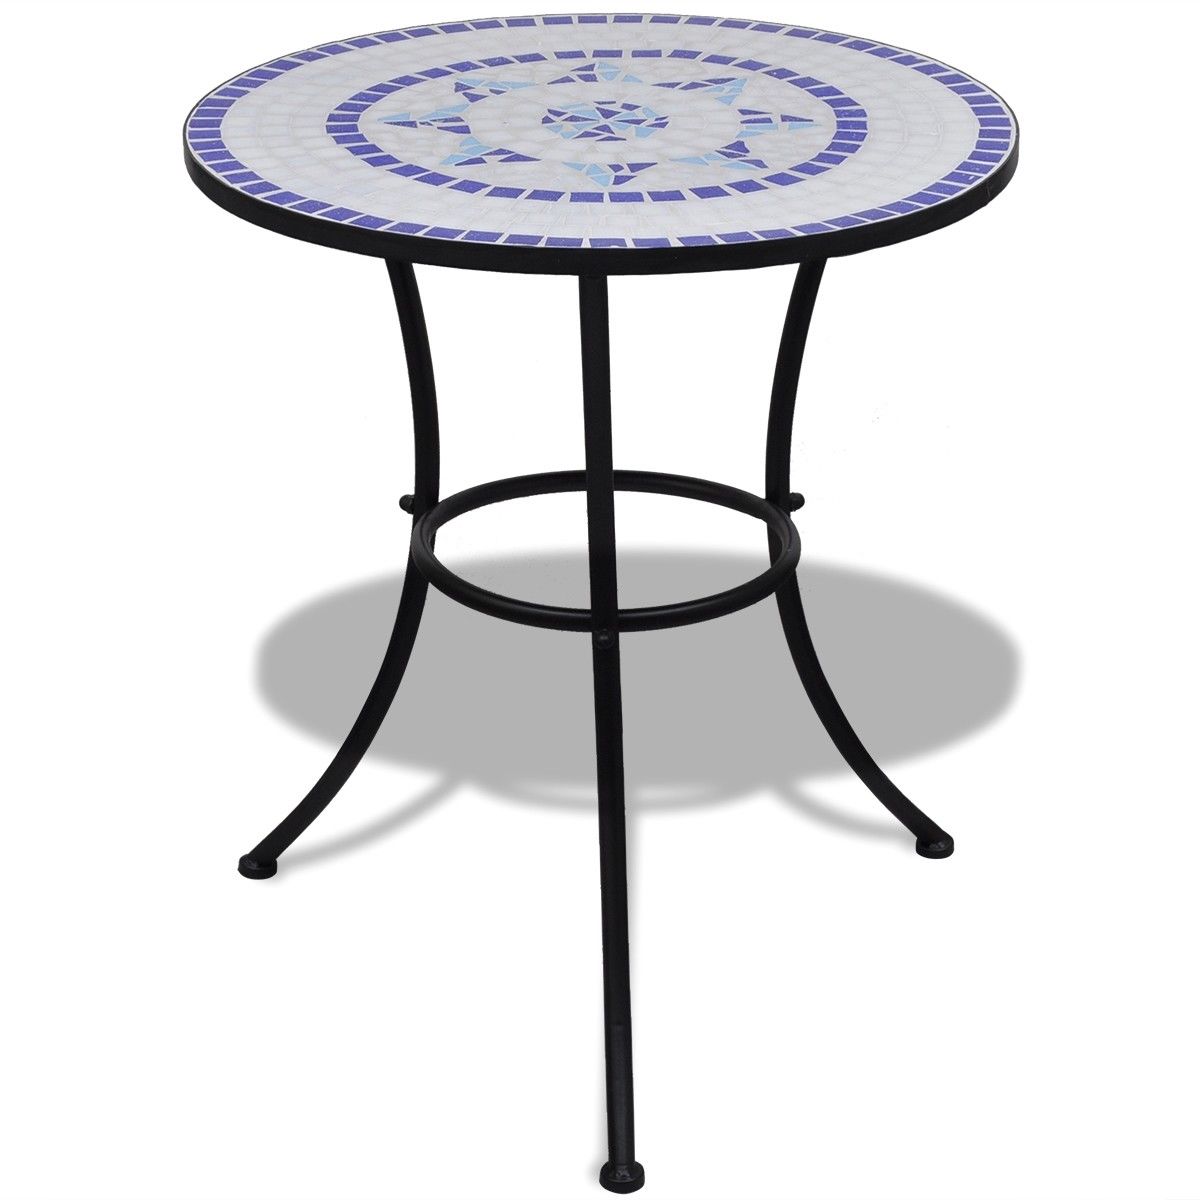 Mozaikový stůl 60 cm, bistro stolek, modro-bílý